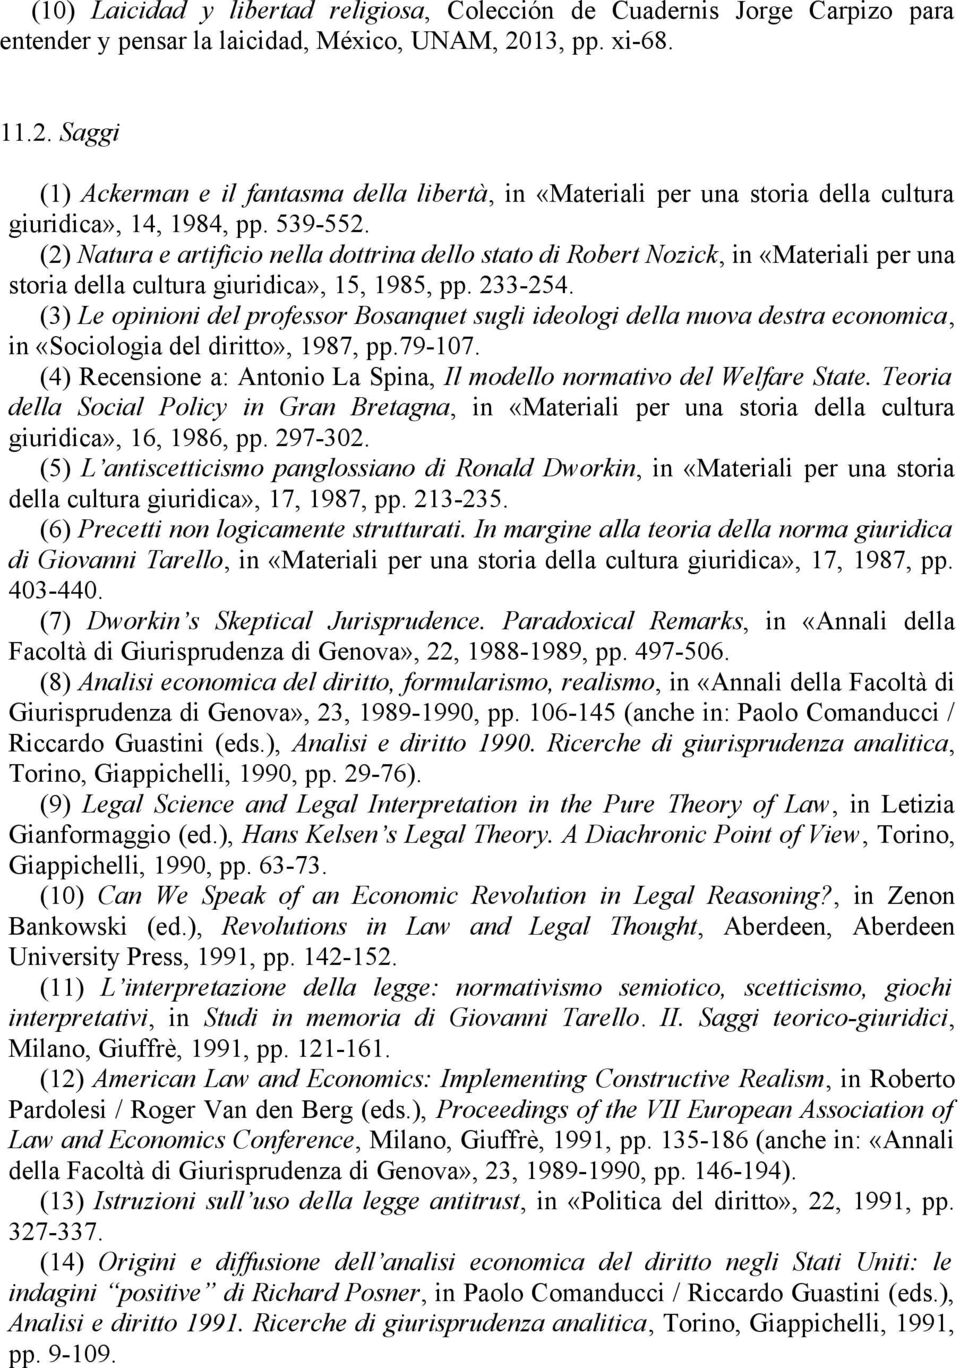 (2) Natura e artificio nella dottrina dello stato di Robert Nozick, in «Materiali per una storia della cultura giuridica», 15, 1985, pp. 233-254.